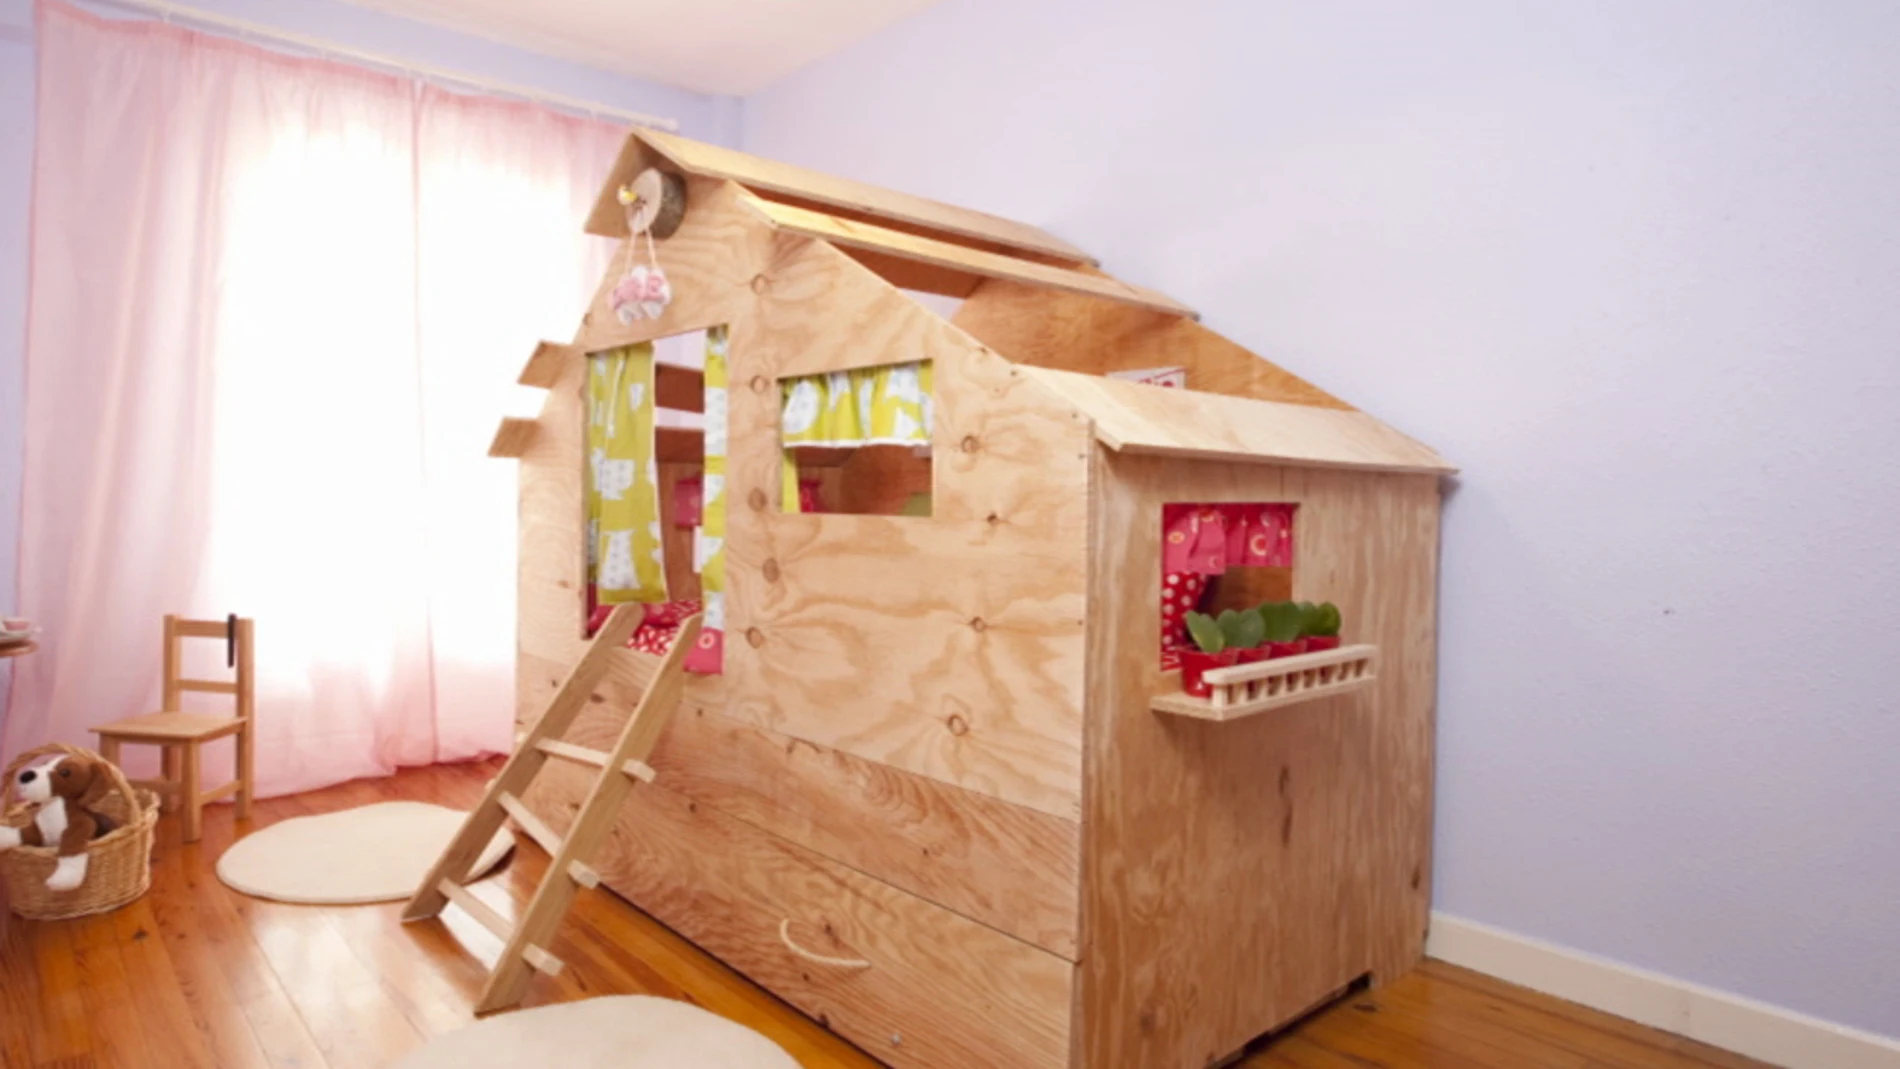 Una casita de madera en la habitación